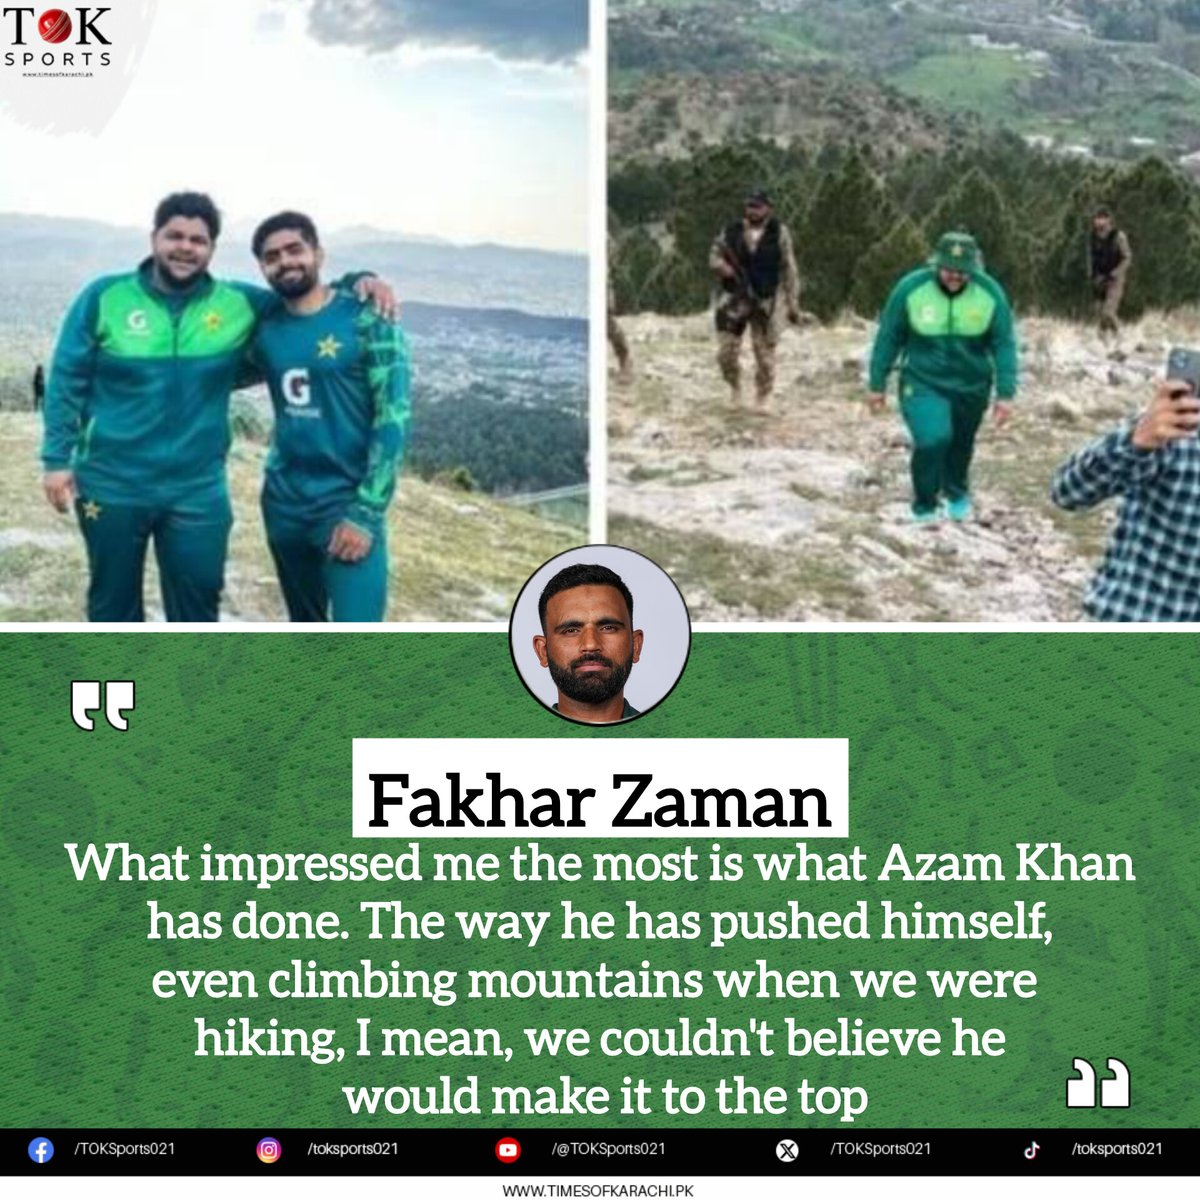 Fakhar Zaman applauds Azam Khan's bravery at the Kakul fitness camp.

#TOKSports #FakharZamam #AzamKhan